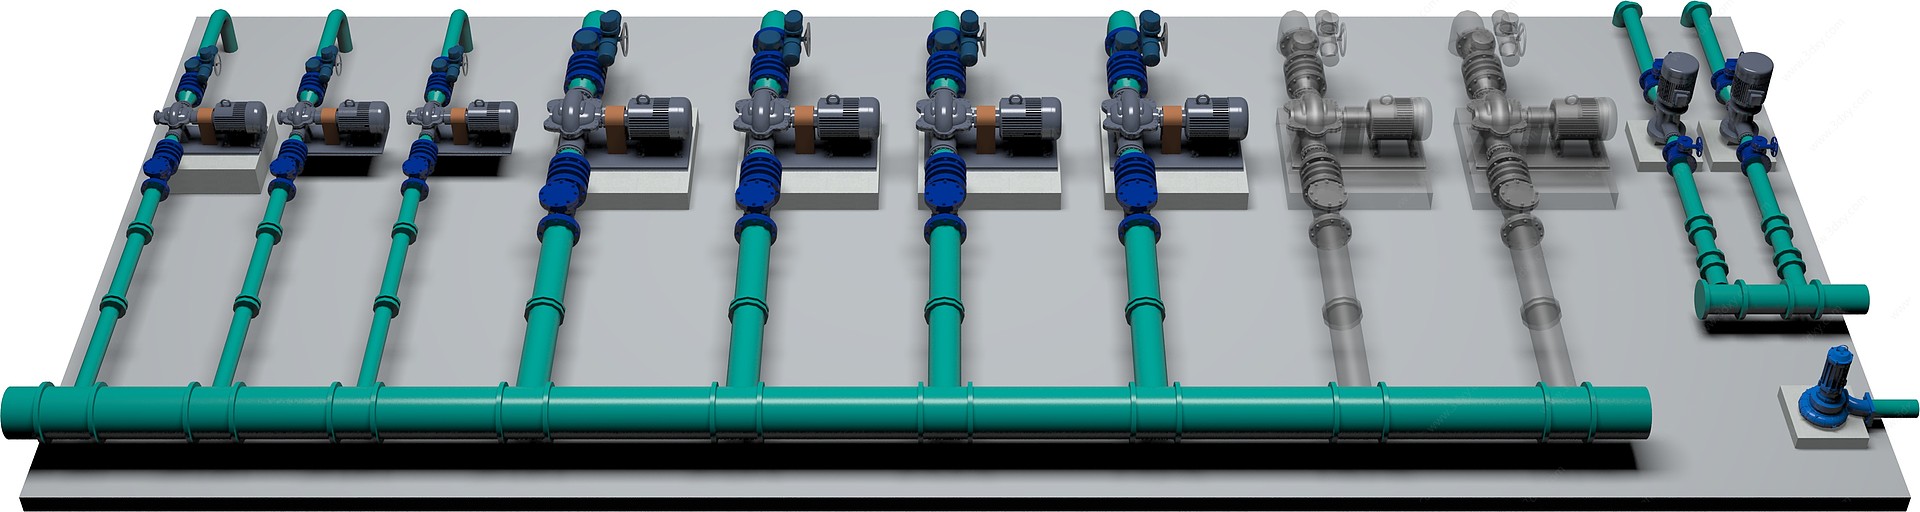 再生水泵房3D模型